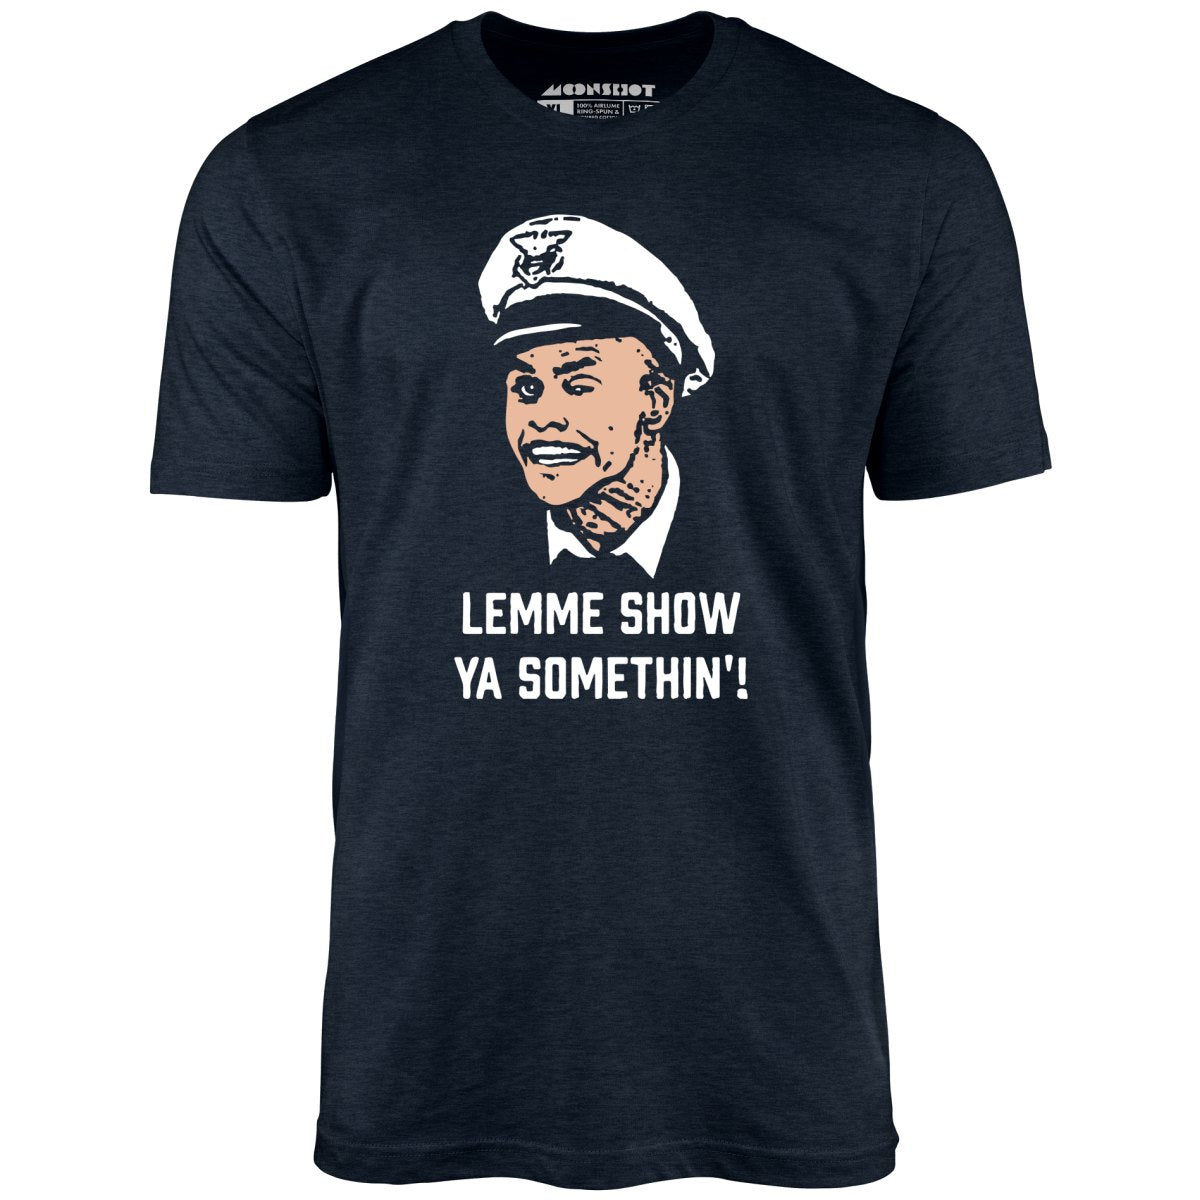 Lemme Show Ya Somethin'! - Unisex T-Shirt